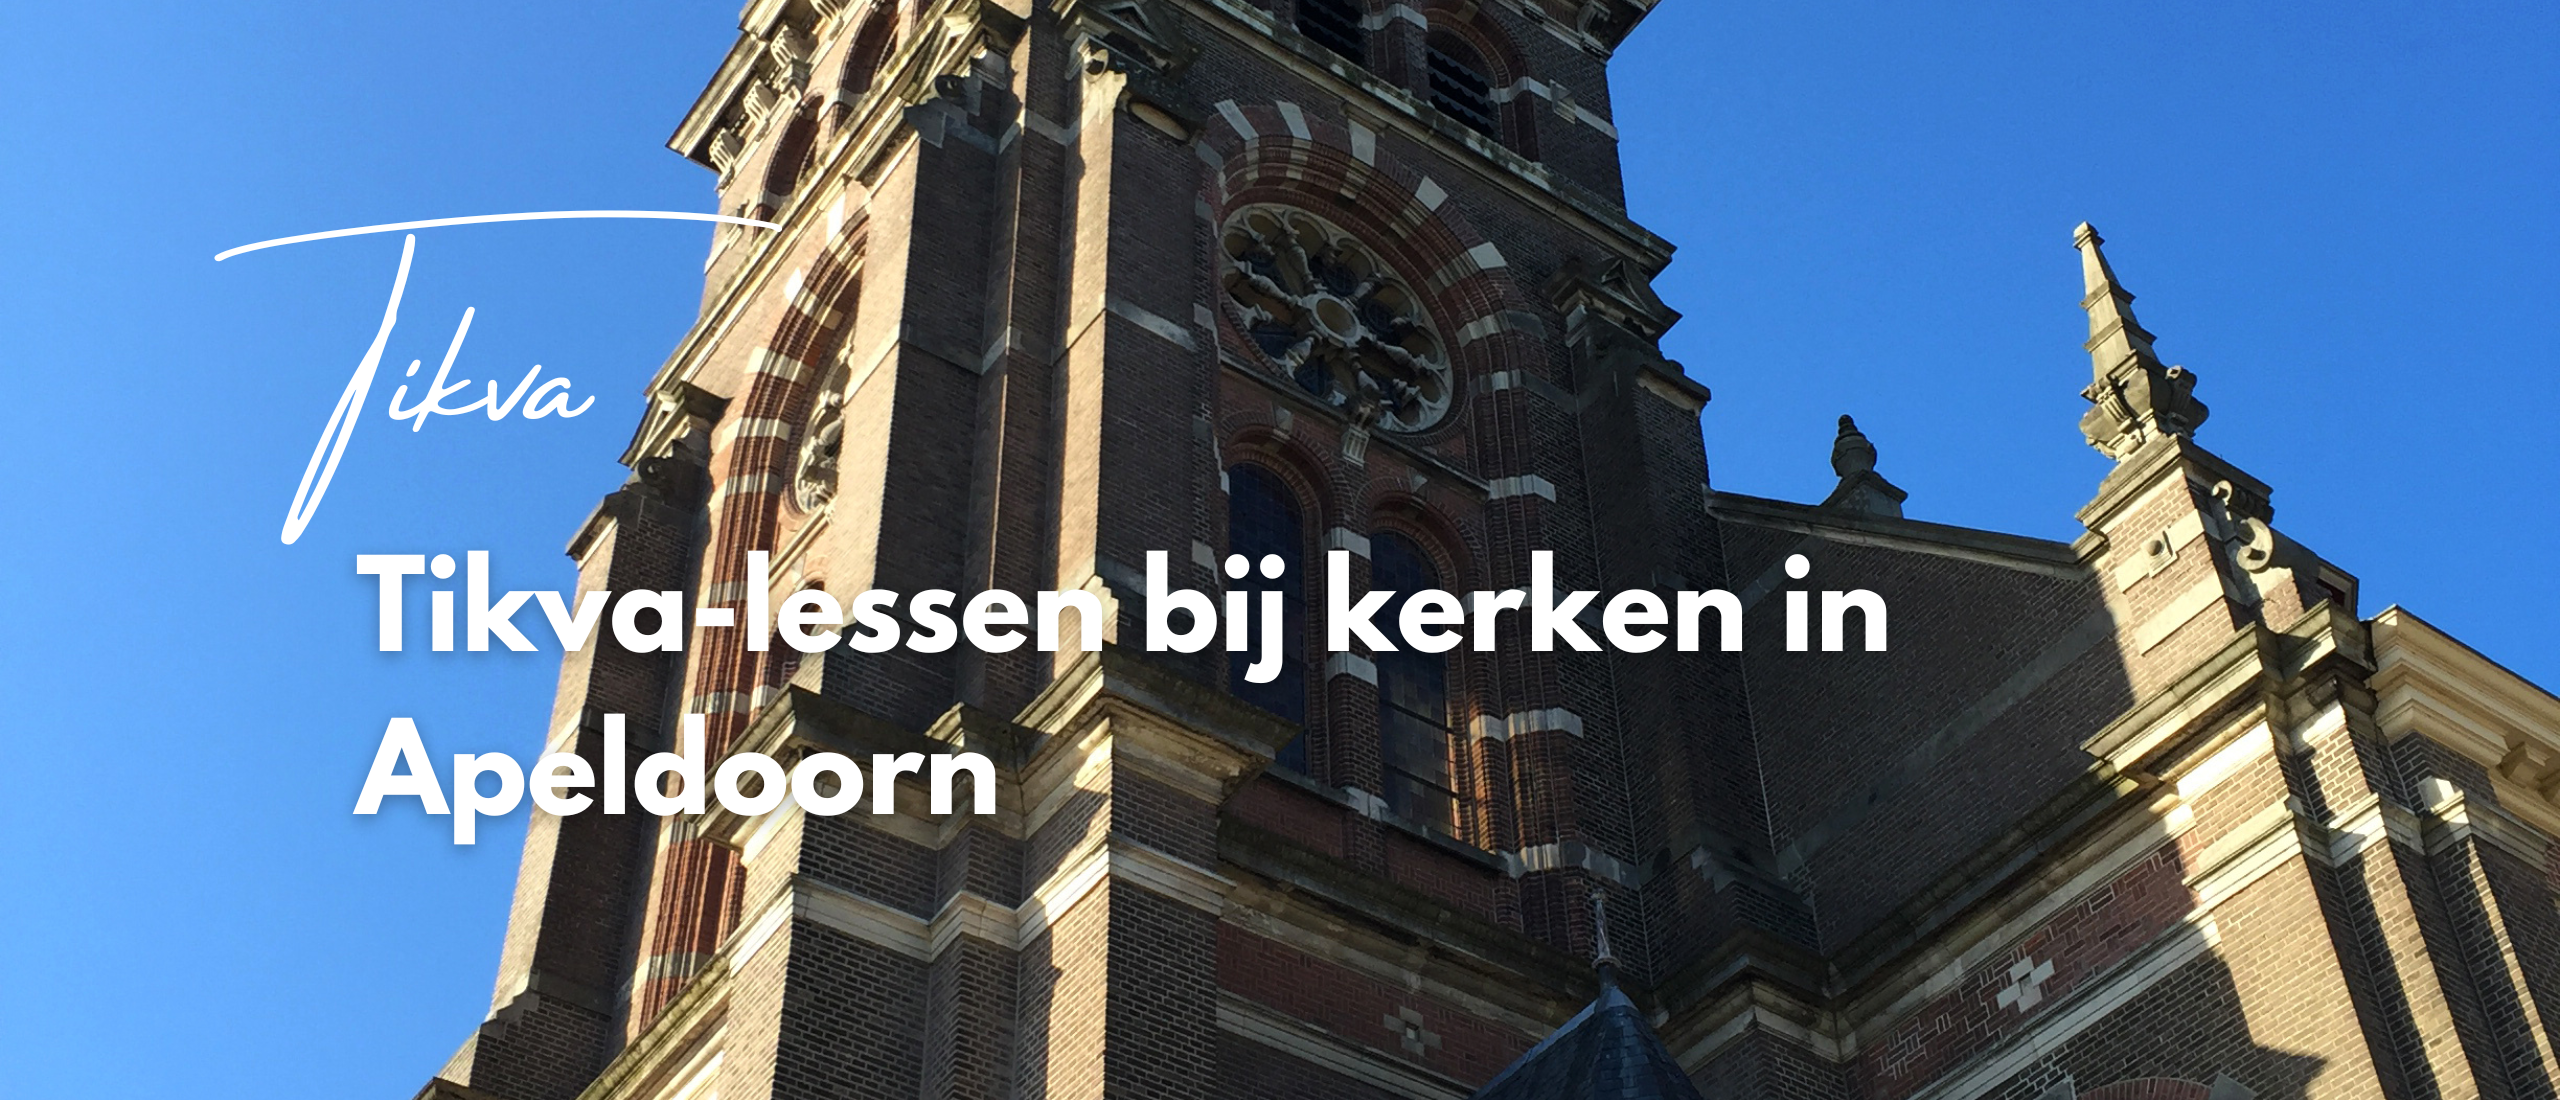 Tikva-lessen bij kerken in Apeldoorn: verbinden van lichaam en geest